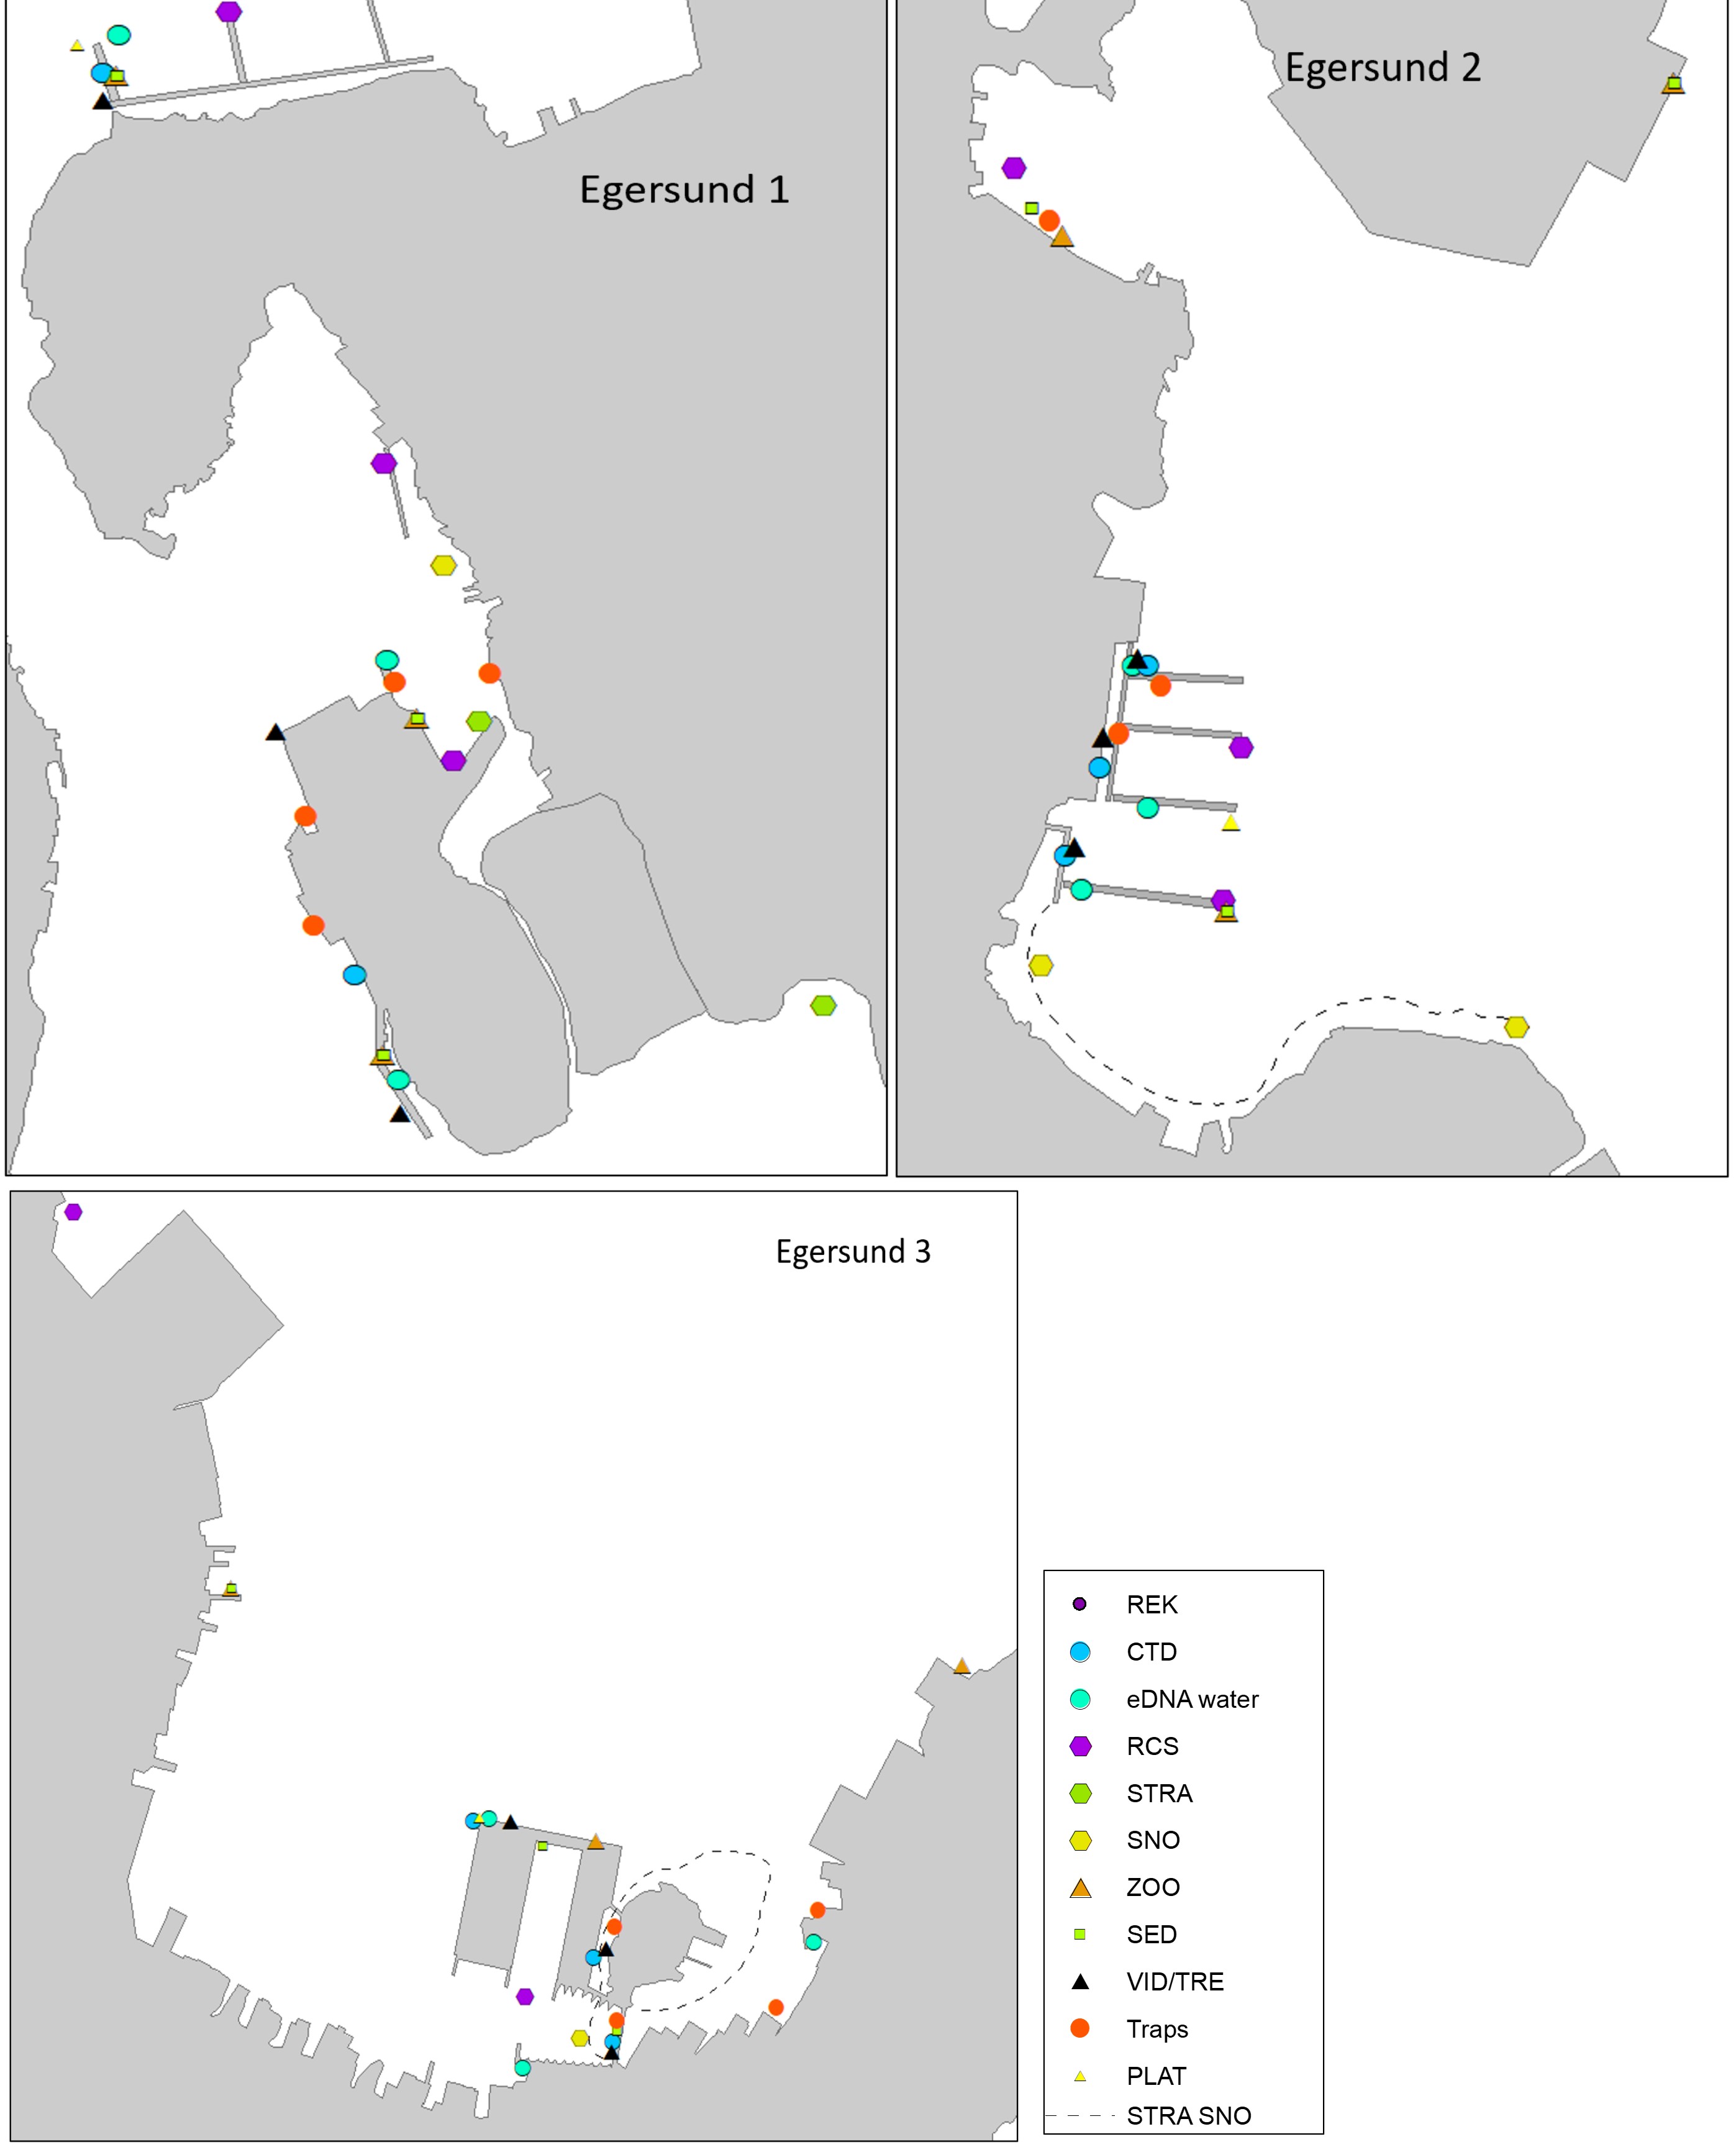 Dette er et kart som gir en oversikt over stasjoner og metoder brukt i Egersund havn